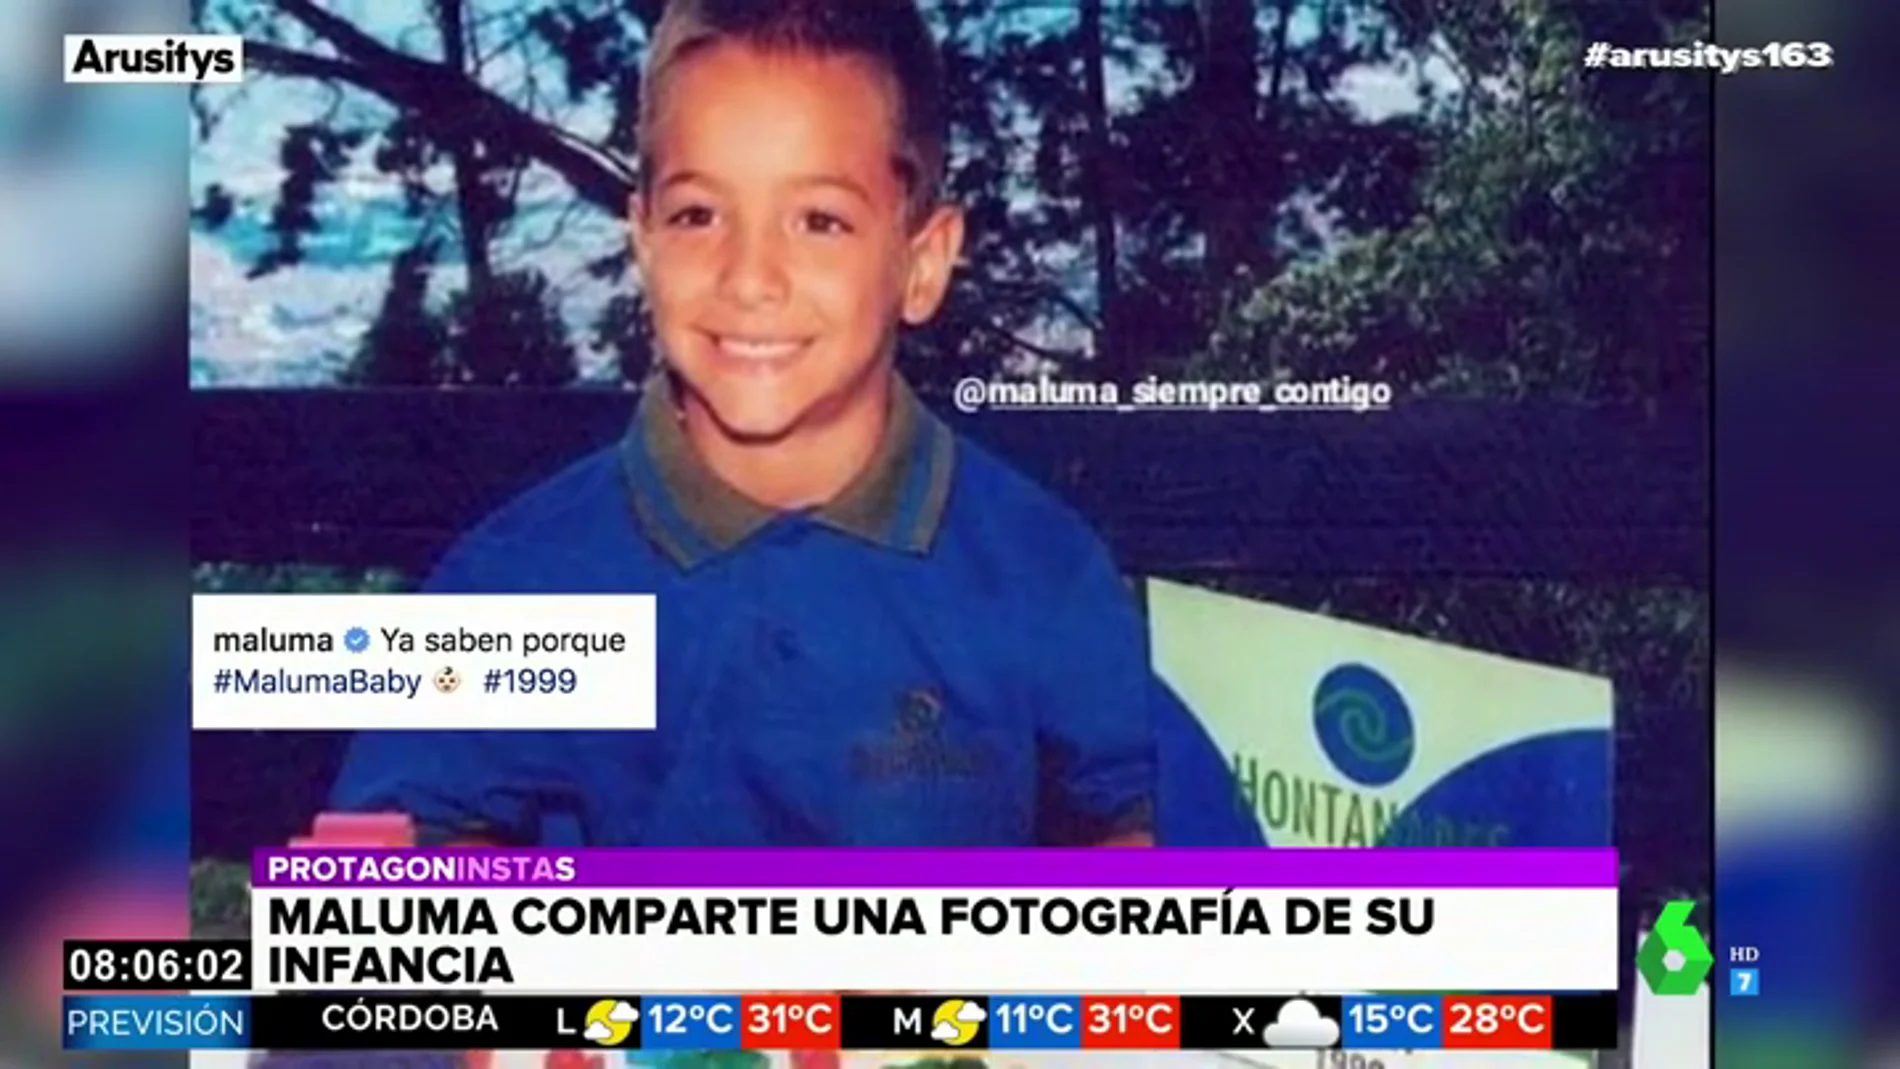 La tierna fotografía de Maluma con cinco años que enamora a las redes sociales